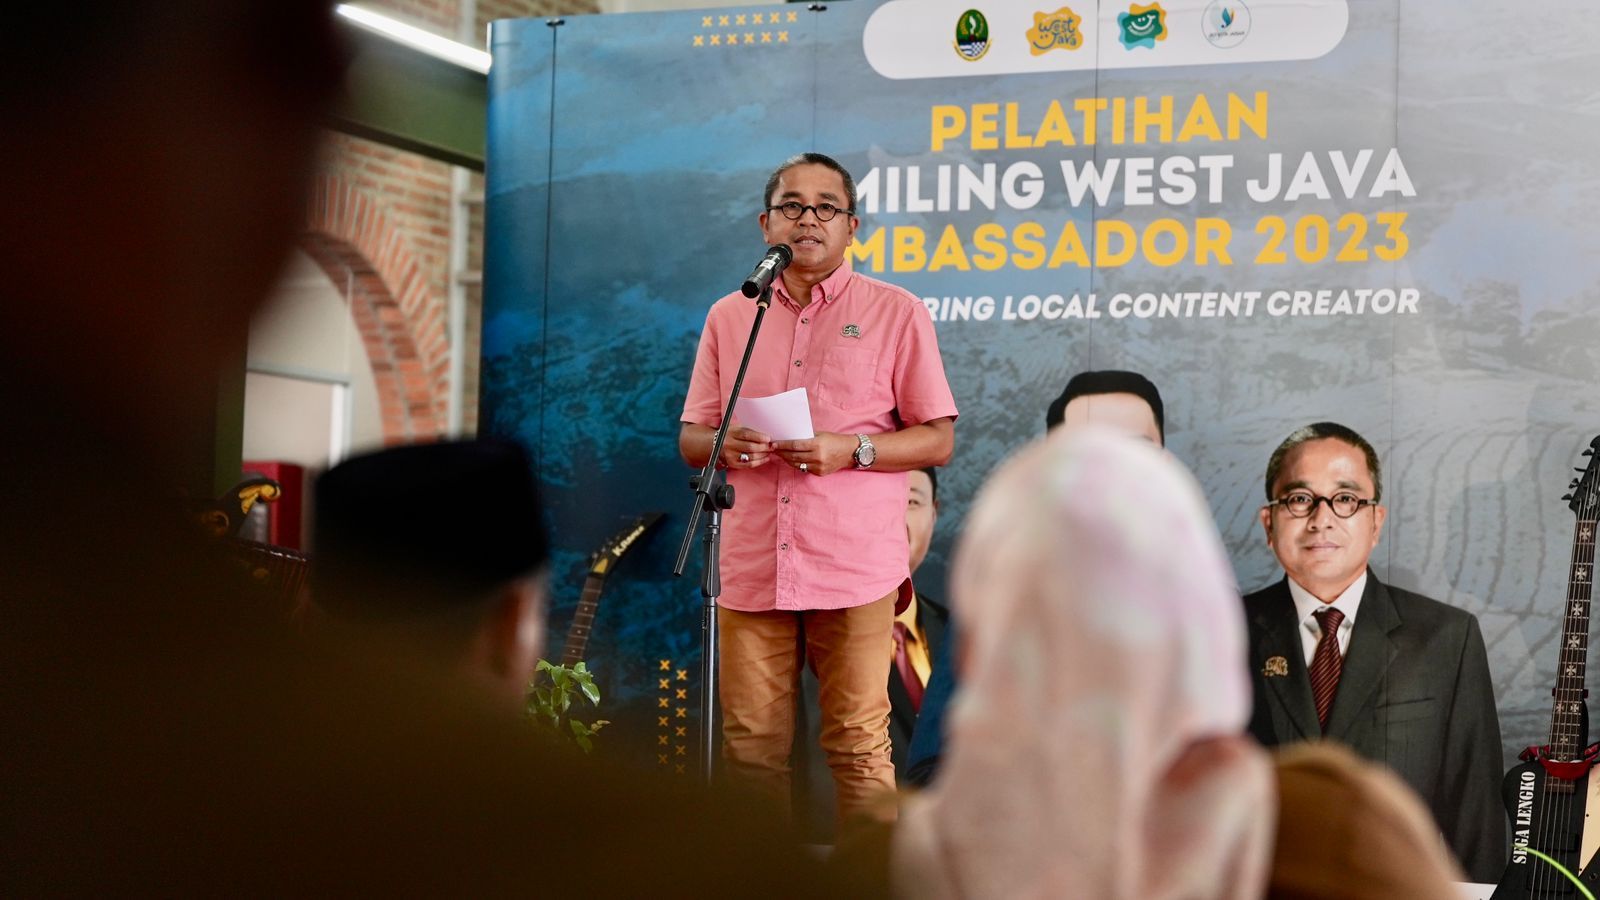 Kadisparbud Jabar Benny Bachiar pada Pelatihan Smilling West Java (SWJ) Ambassador 2023 